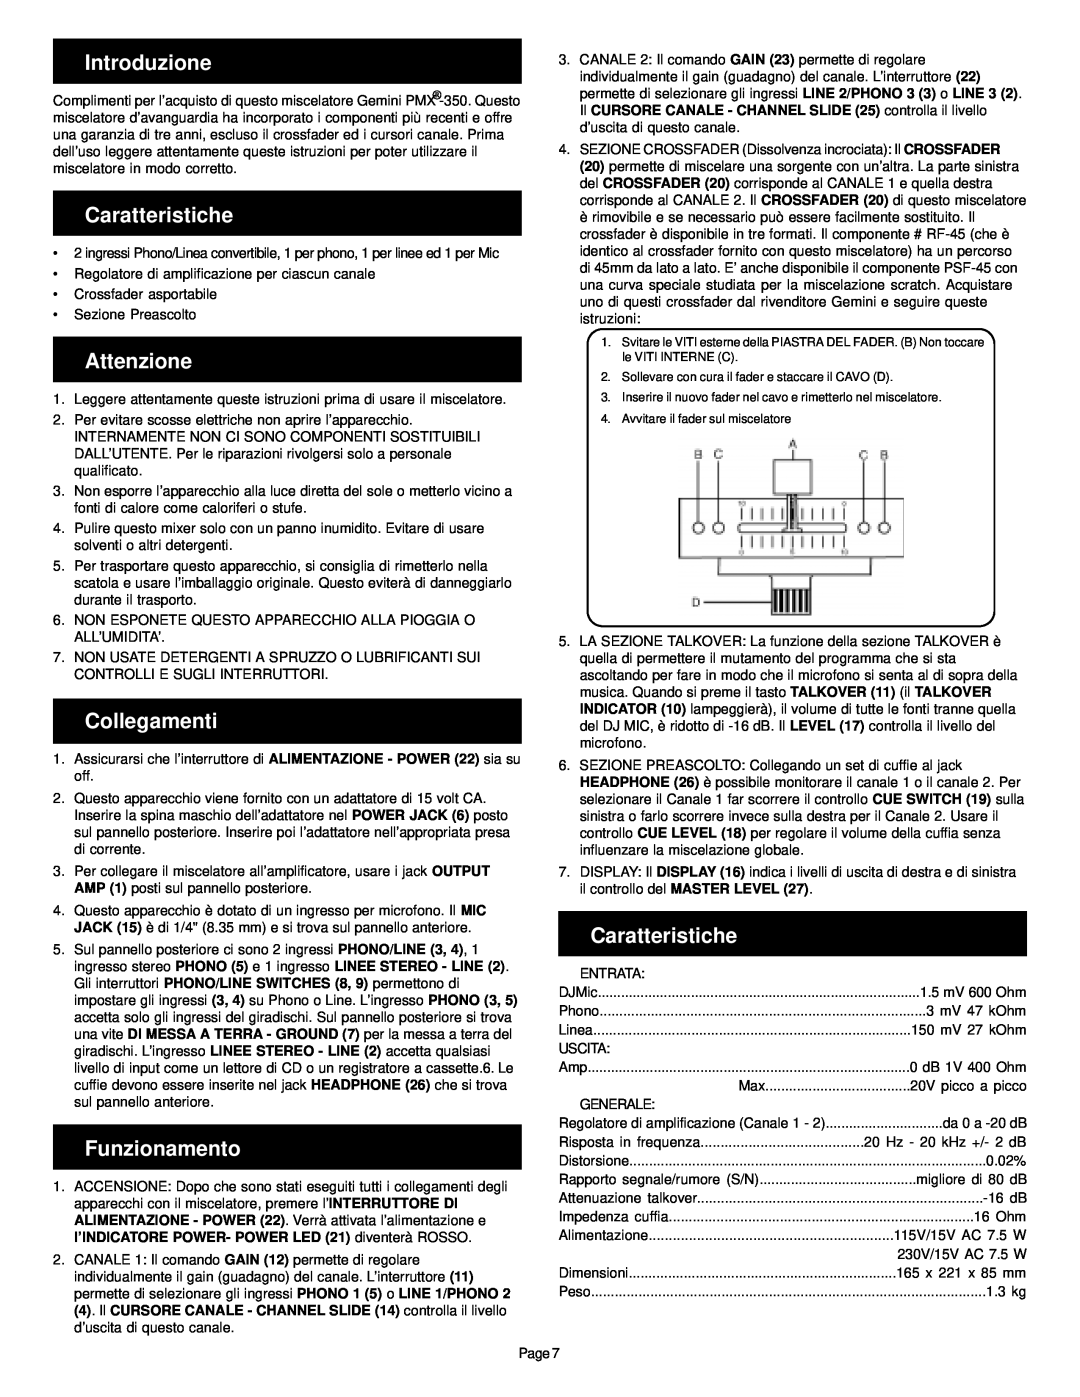 Gemini PMX-350 manual Introduzione, Caratteristiche, Attenzione, Collegamenti, Funzionamento 